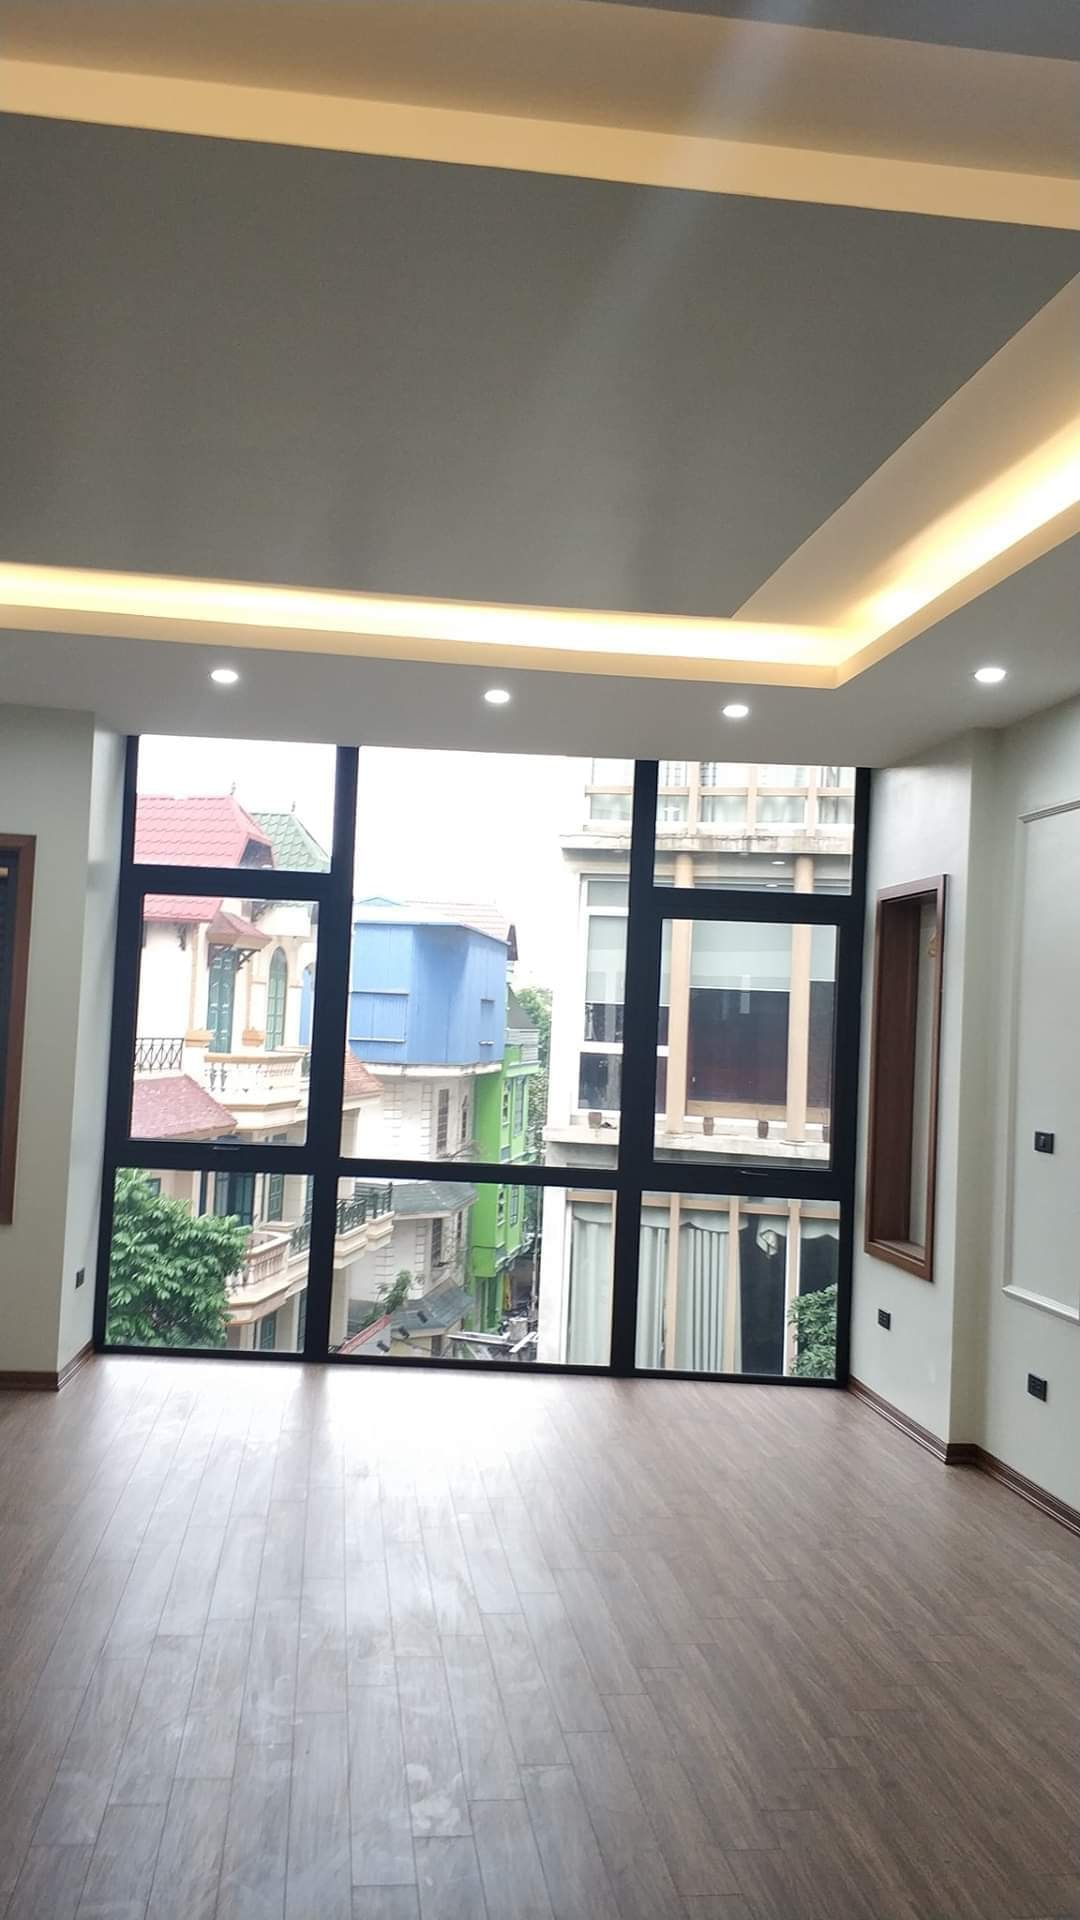 Cần bán gấp nhà phố Kim Đồng, nhà mới đẹp, 2 mặt thoáng, thang máy 56m2 giá 11,6 tỷ.